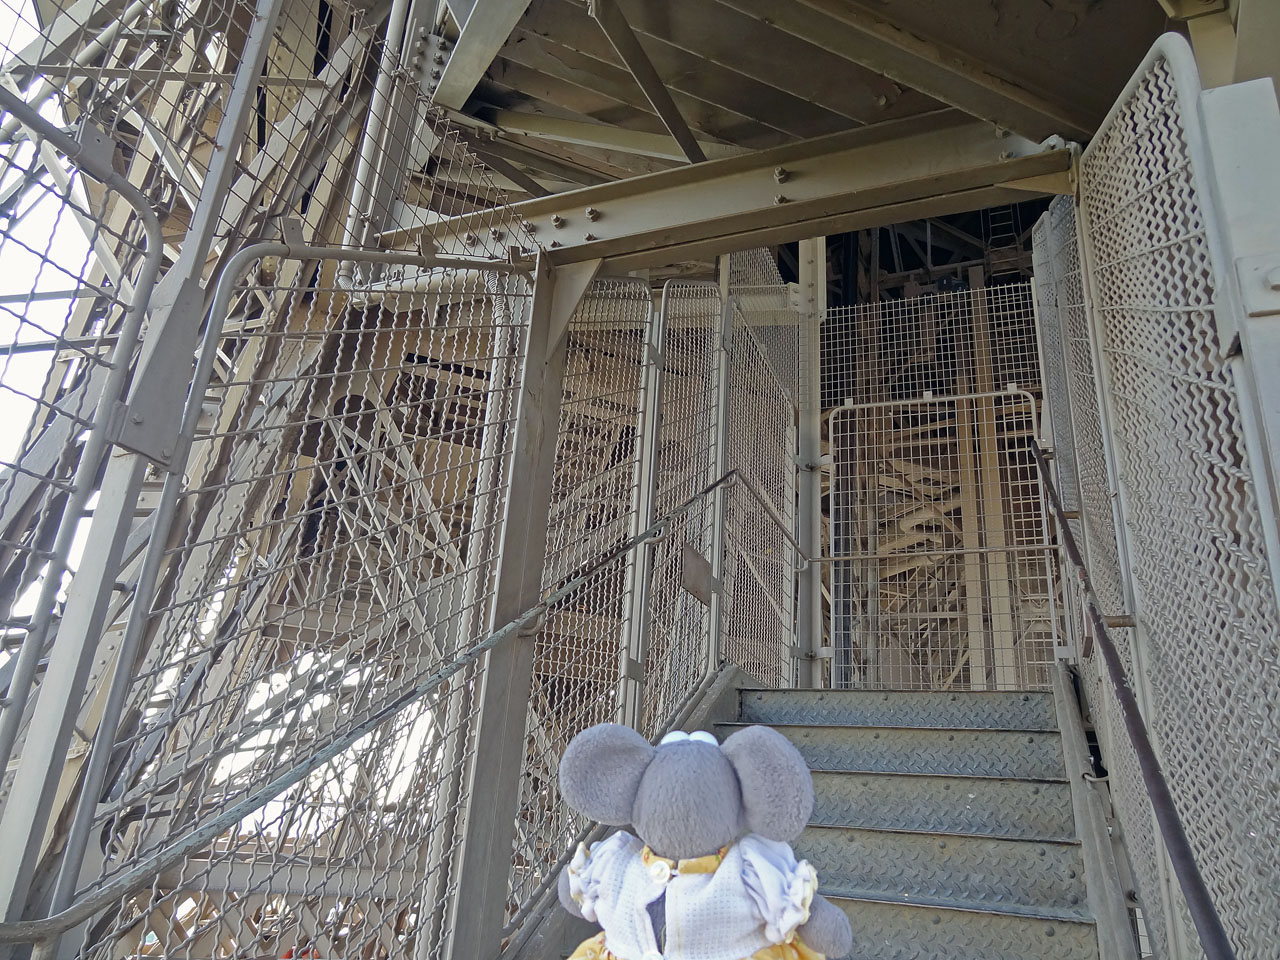 Les escaliers de la tour Eiffel